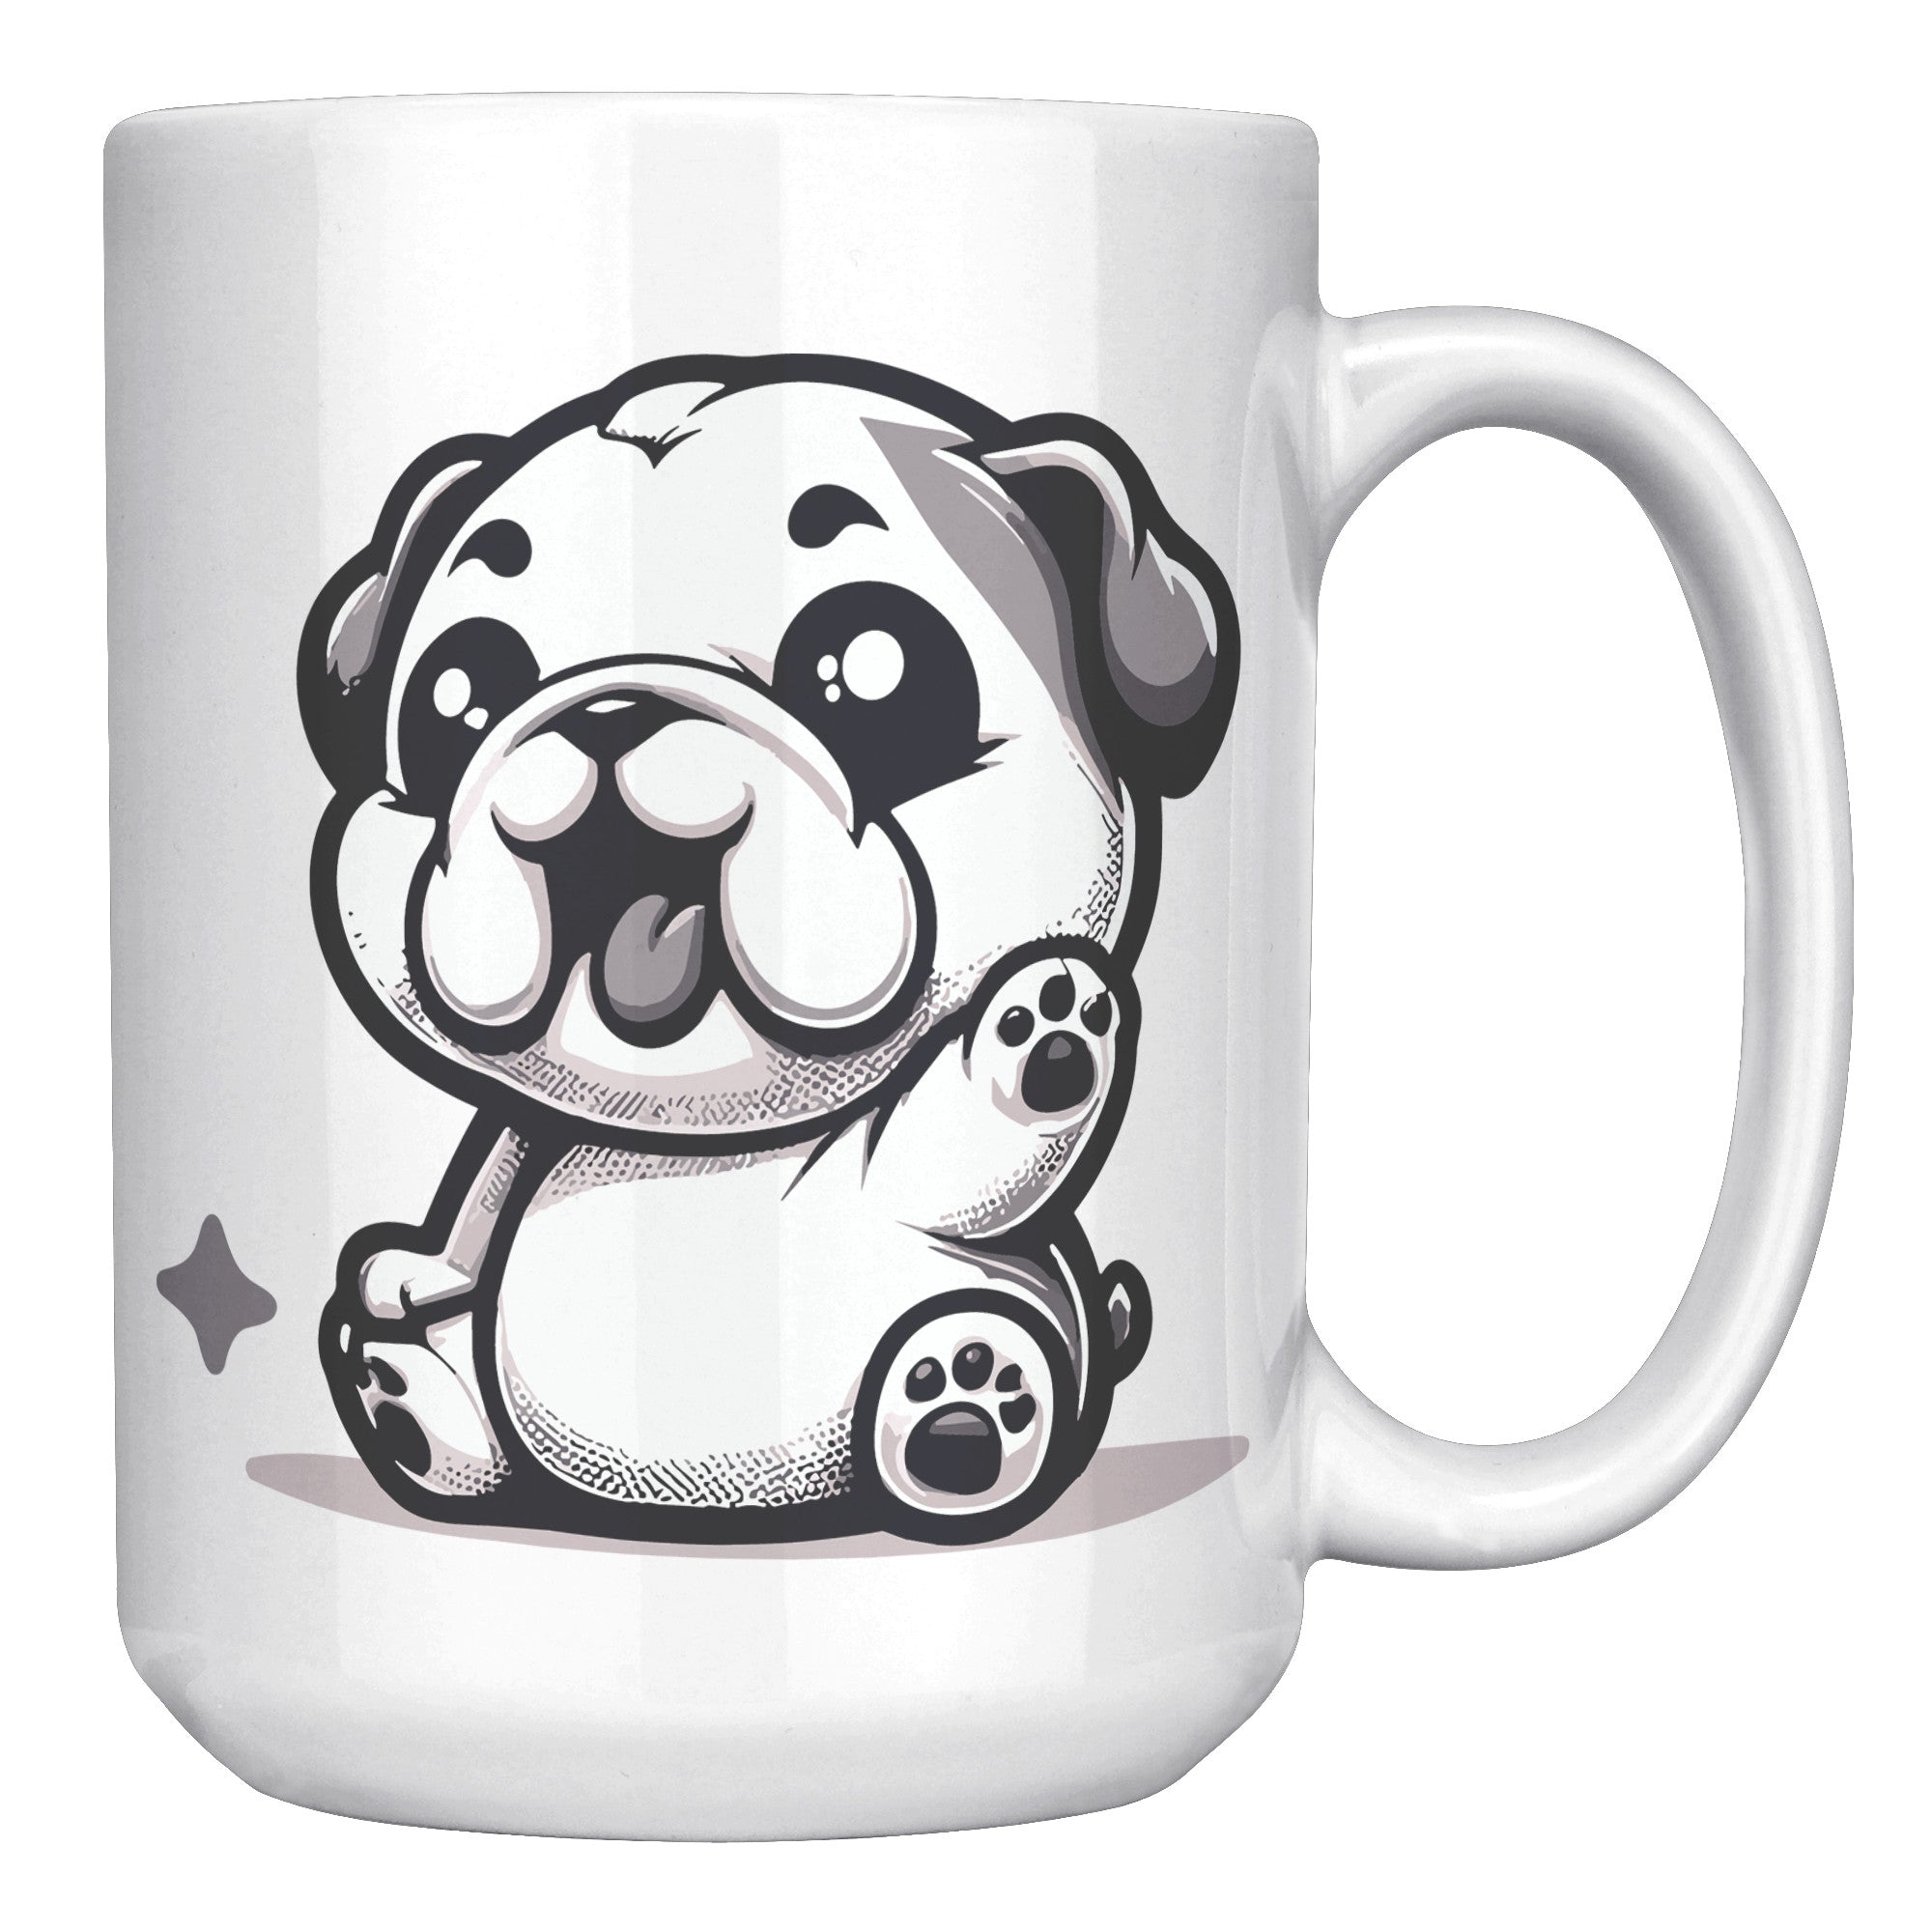 15oz French Bulldog Cartoon Coffee Mug - Frenchie Lover Coffee Mug - Perfect Gift for French Bulldog Owners - Adorable Bat-Eared Dog Coffee Mug - G1